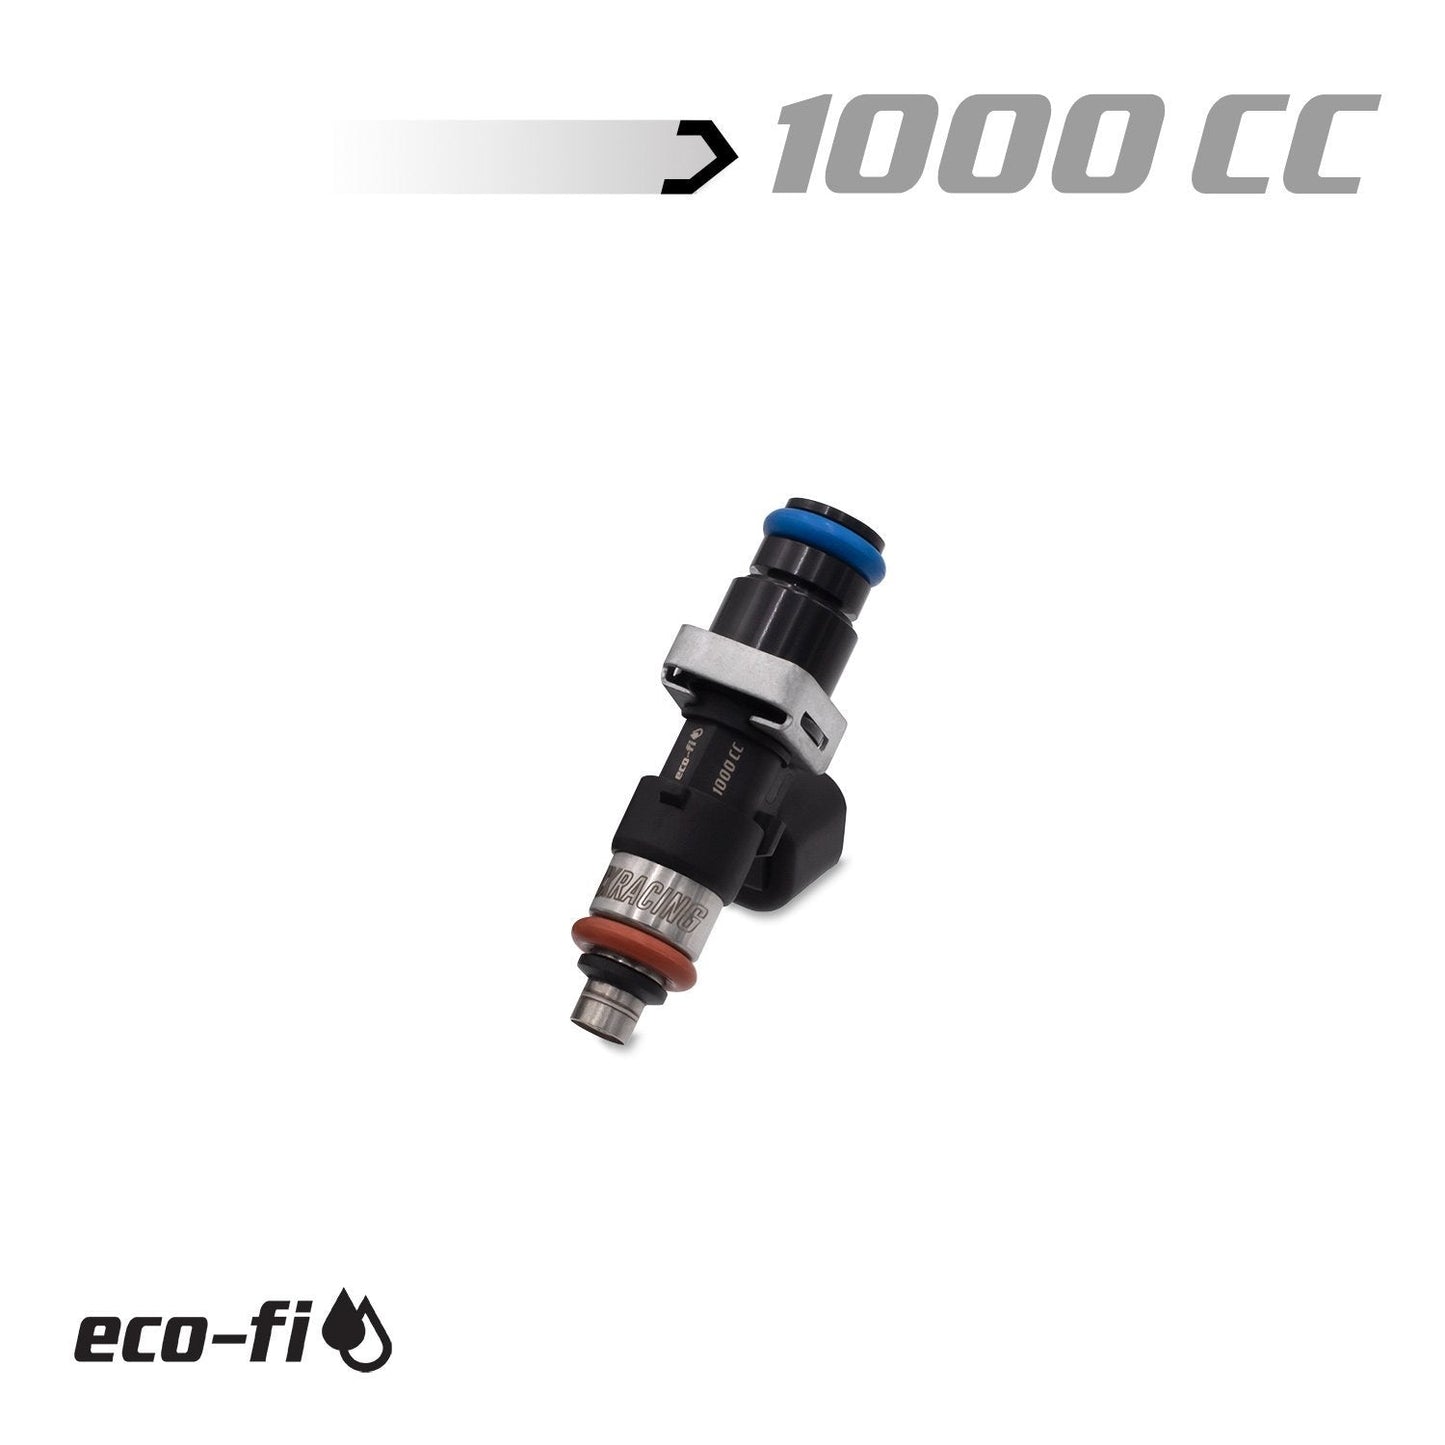 1000cc Honda K-Series / 06-09 S2000 Injectors